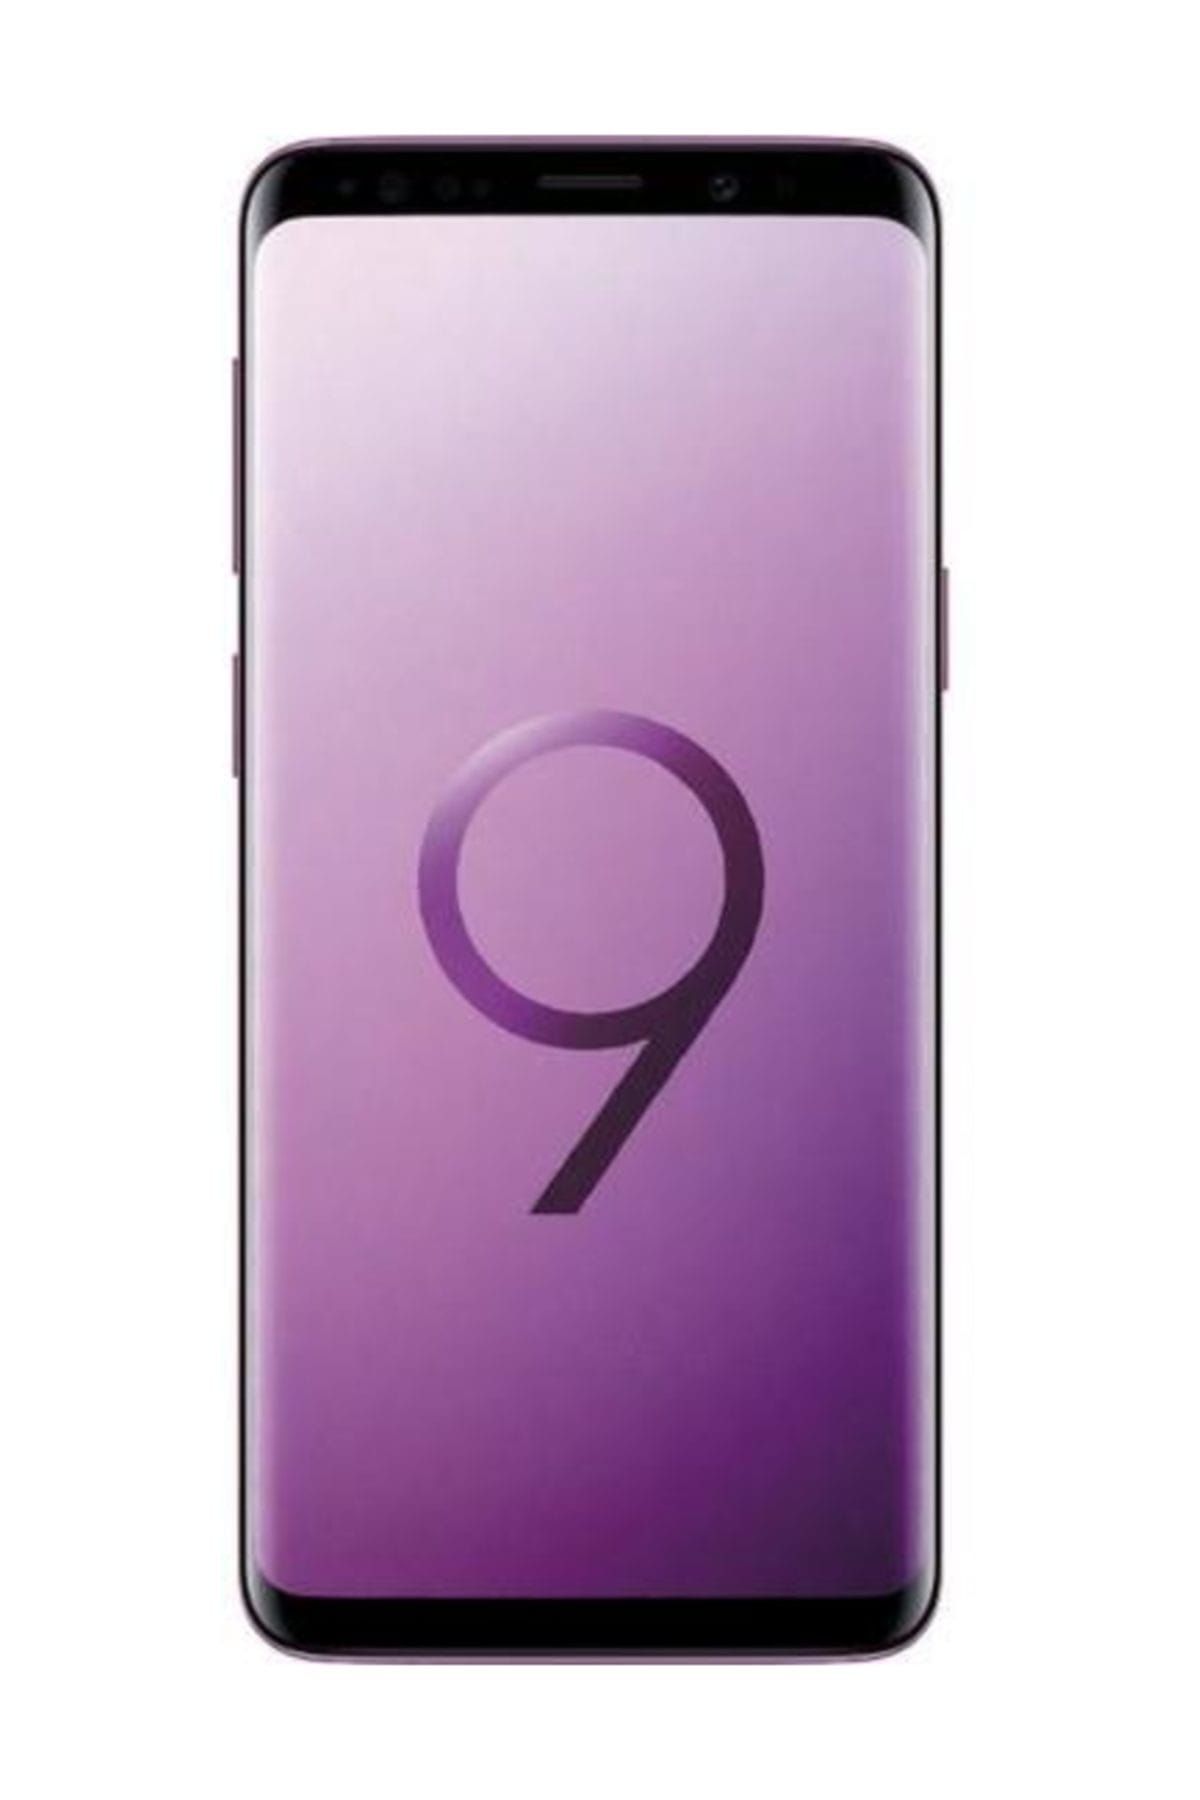 Samsung GALAXY S9 64GB-LİLAC PURPLE-(Samsung Türkiye Garantili)